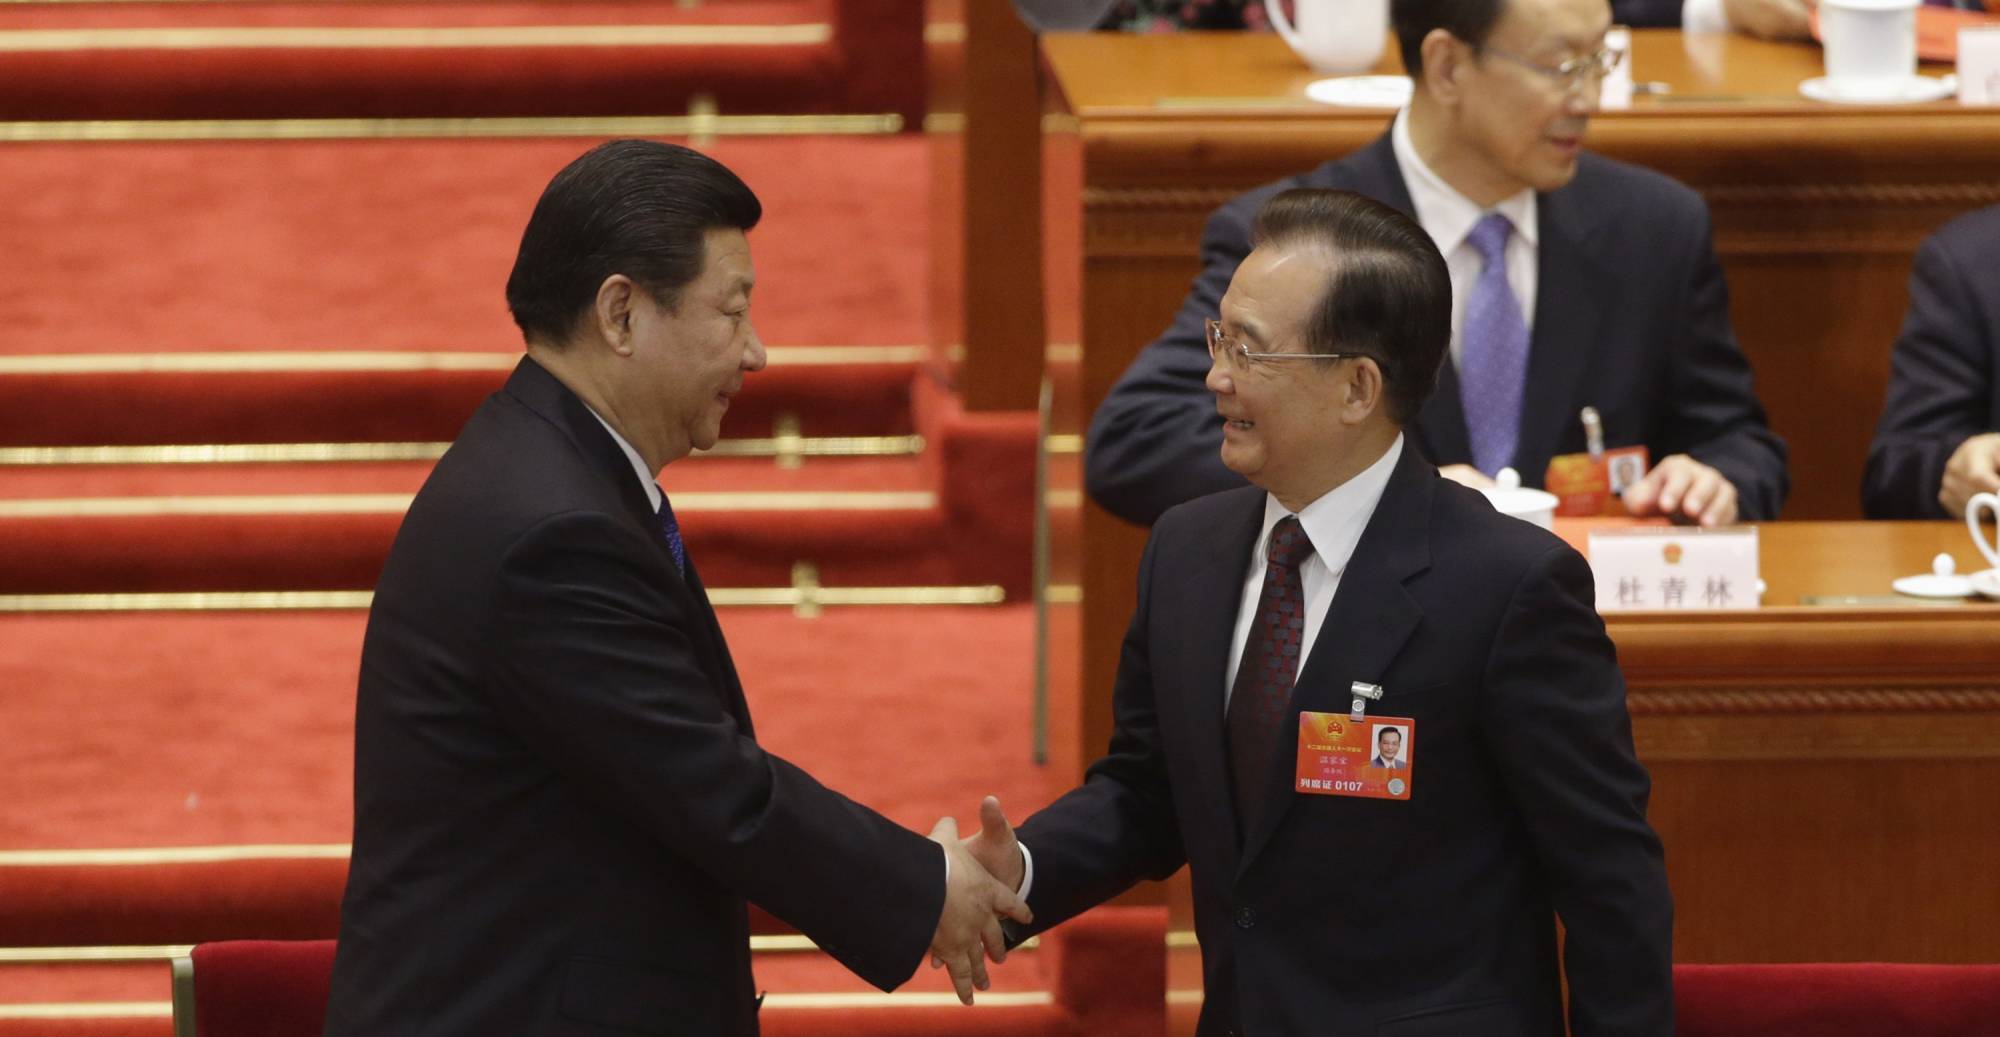 Le président chinois Xi Jinping et l'ancien Premier ministre Wen Jiabao lors de la désignation formelle de Xi à la tête de l'État, devant l'Assemblée nationale populaire au Grand Hall du Peuple à Pékin, le 15 mars 2013. (Source : Japan Times)